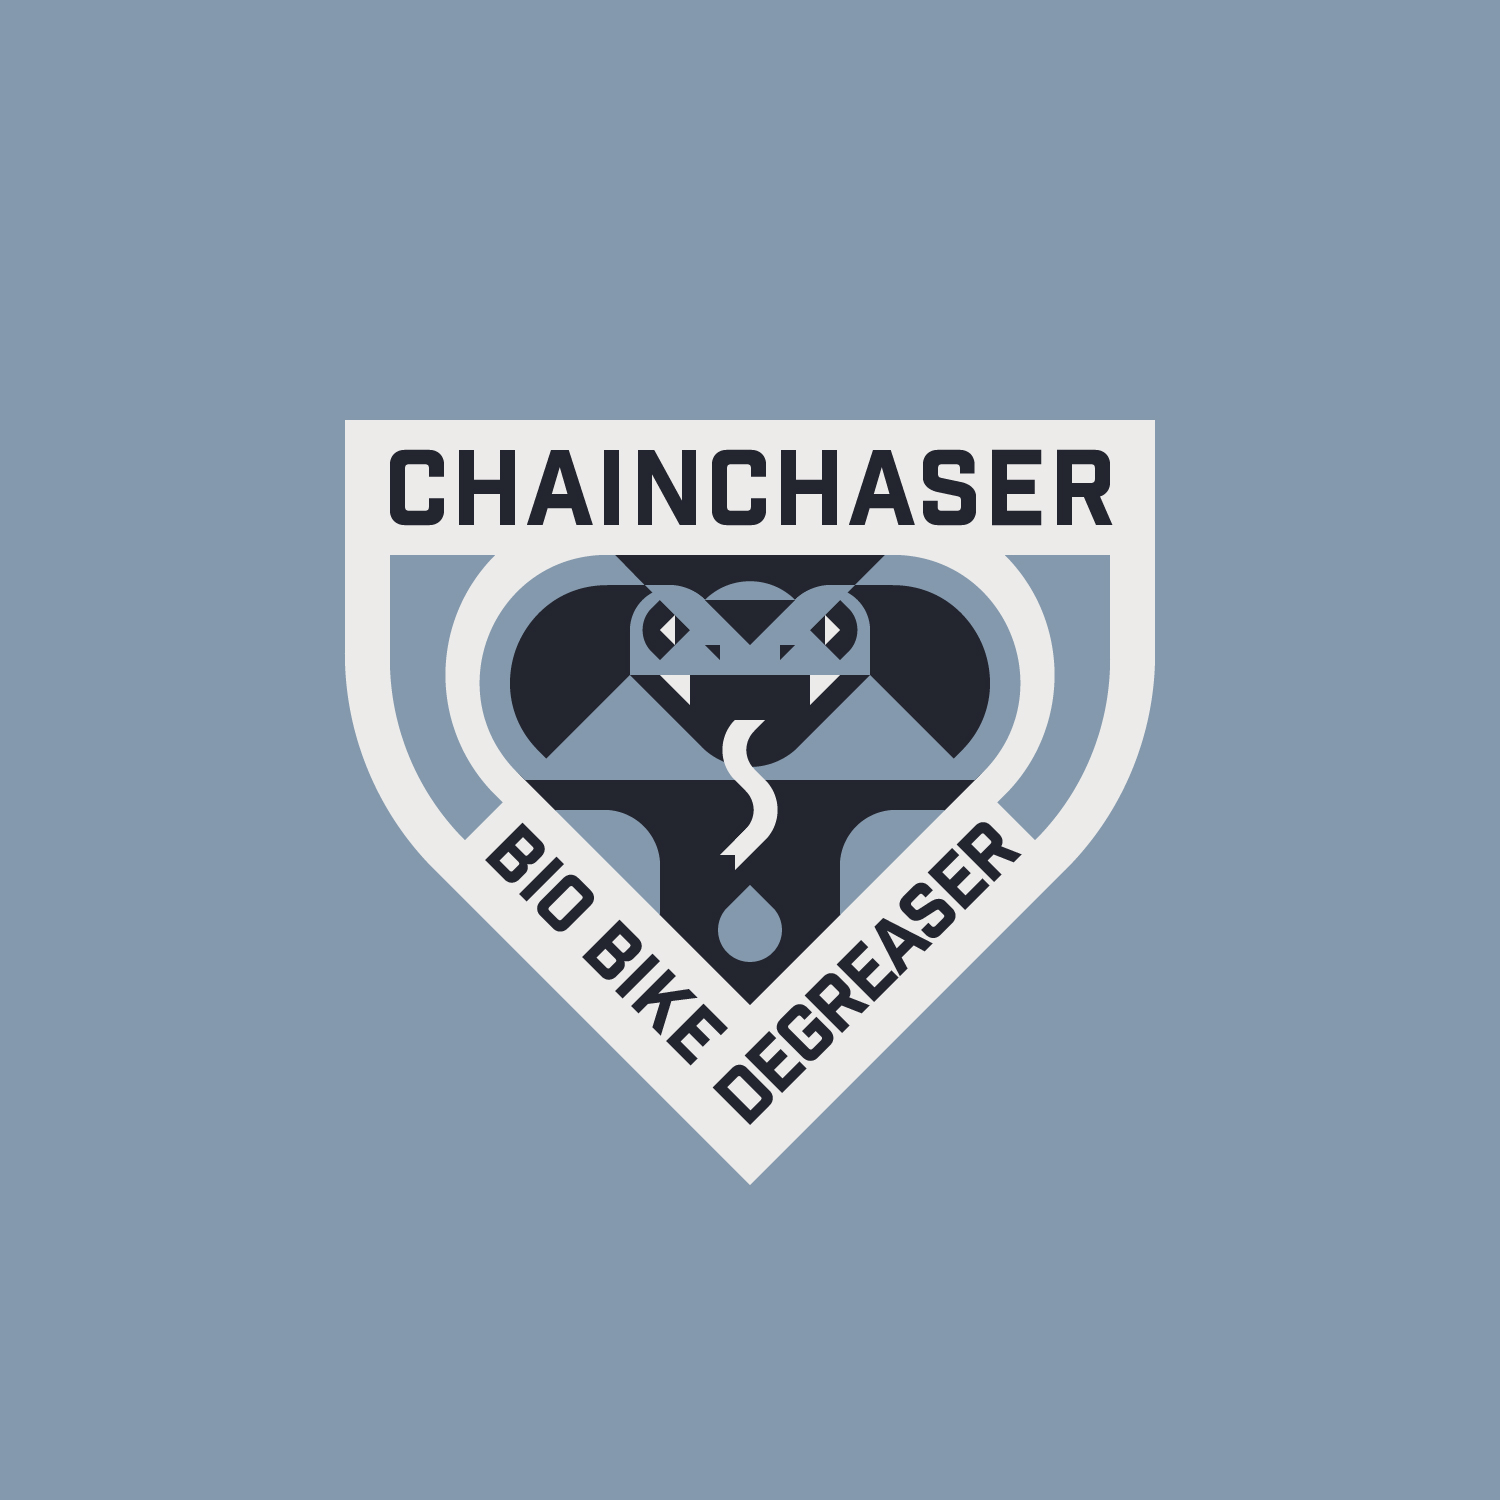 Le logo de 'Chain Chaser' met en avant le vélo, la chaîne, le dégraissant, et l'outillage.